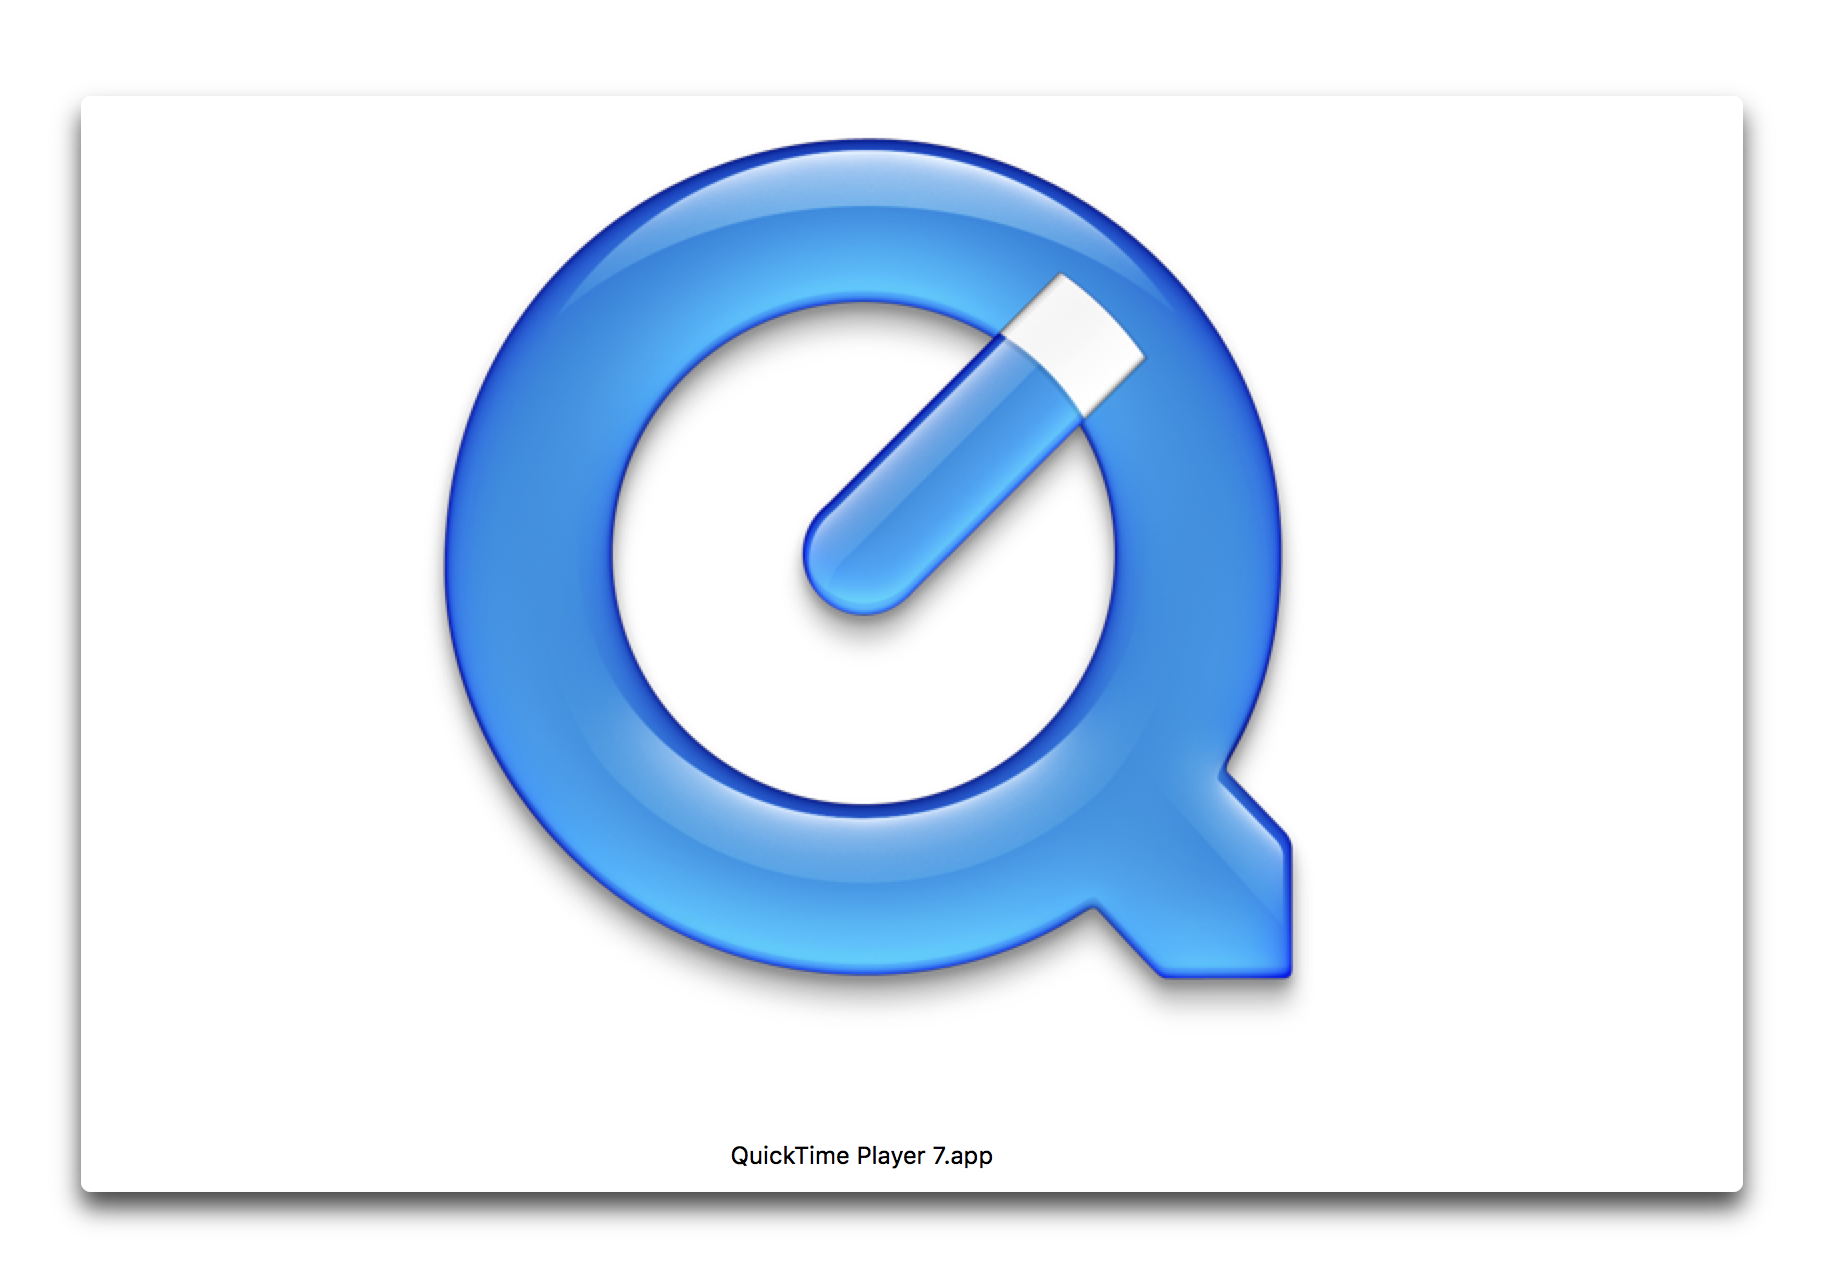 【Mac】QuickTime Player 7は64bitにはならない